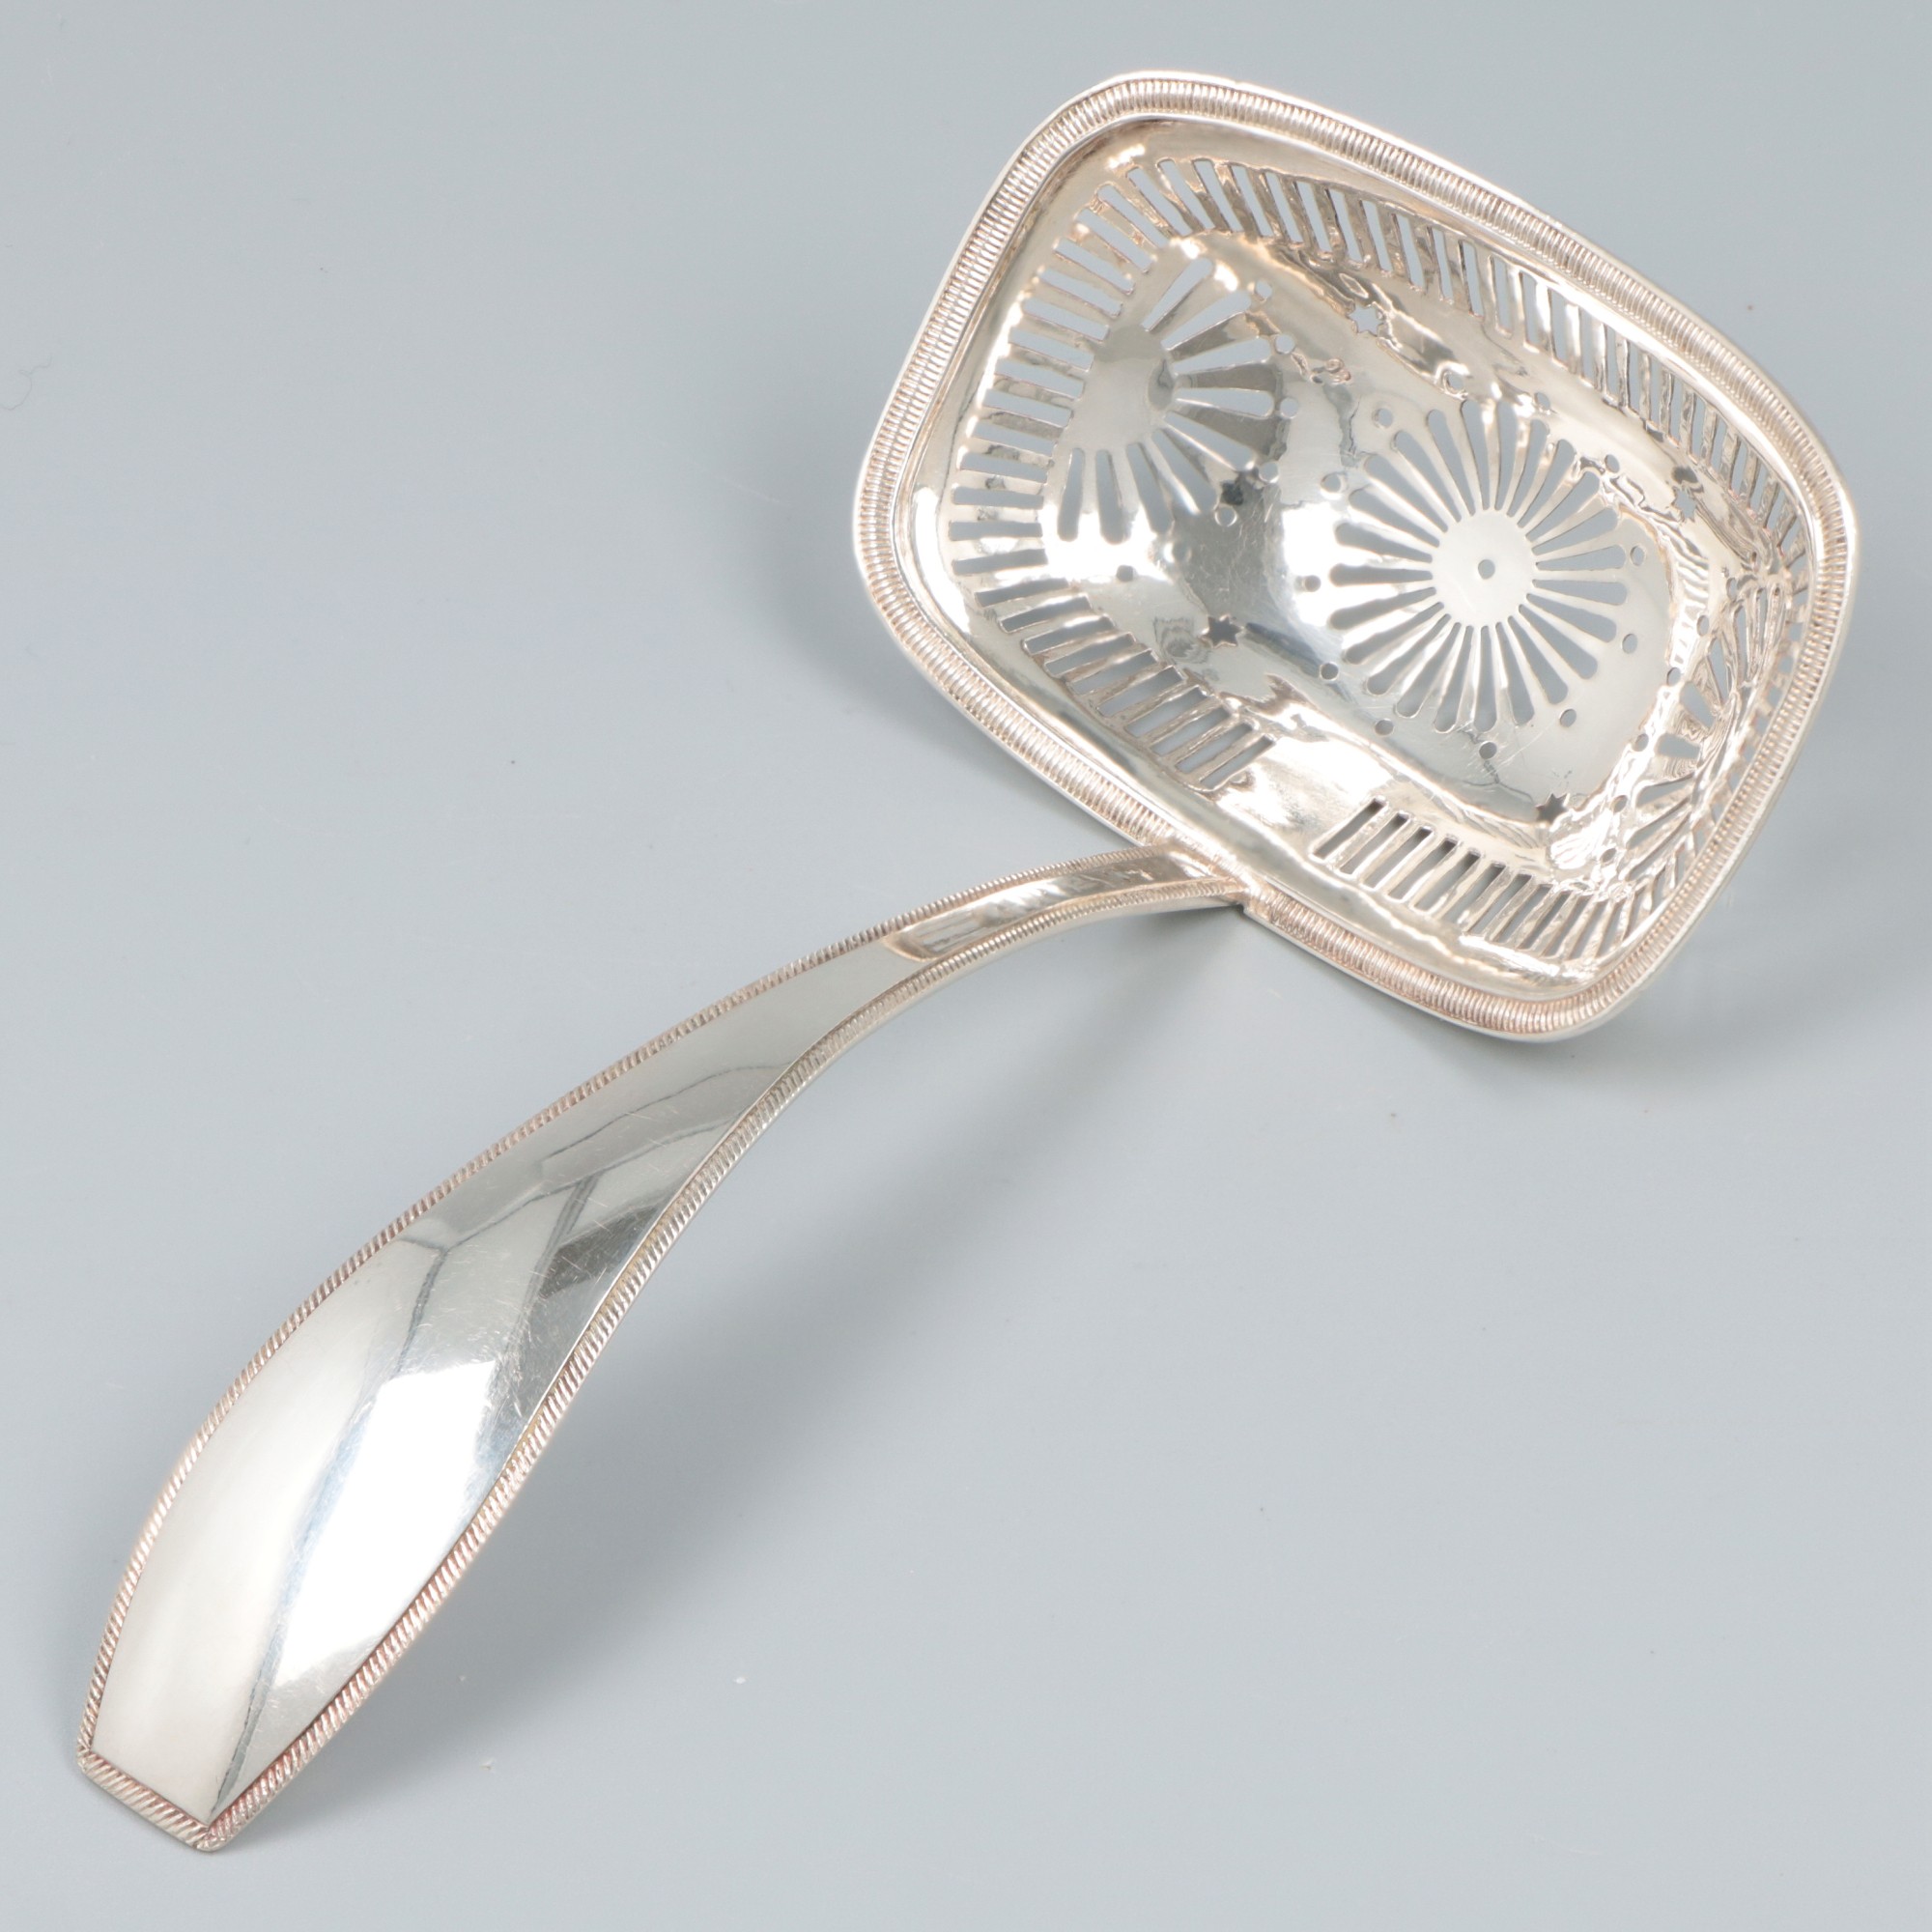 Sifter spoon (Amsterdam, Jacob van Wijk, 1832) silver.